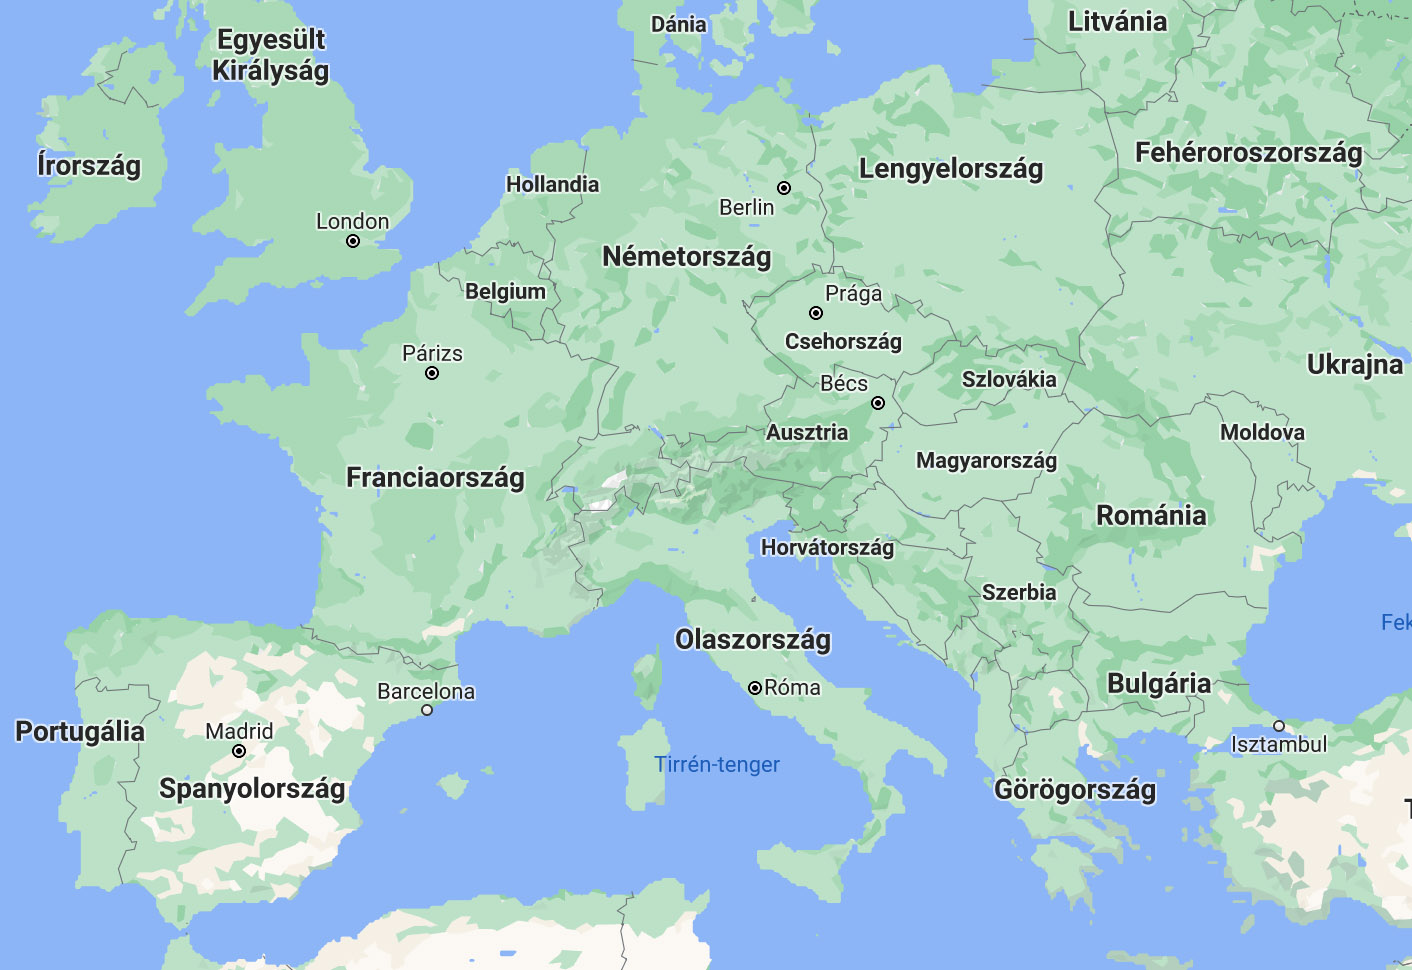 Ősszel is sok helyen járt Európában a NER kedvenc magángépe